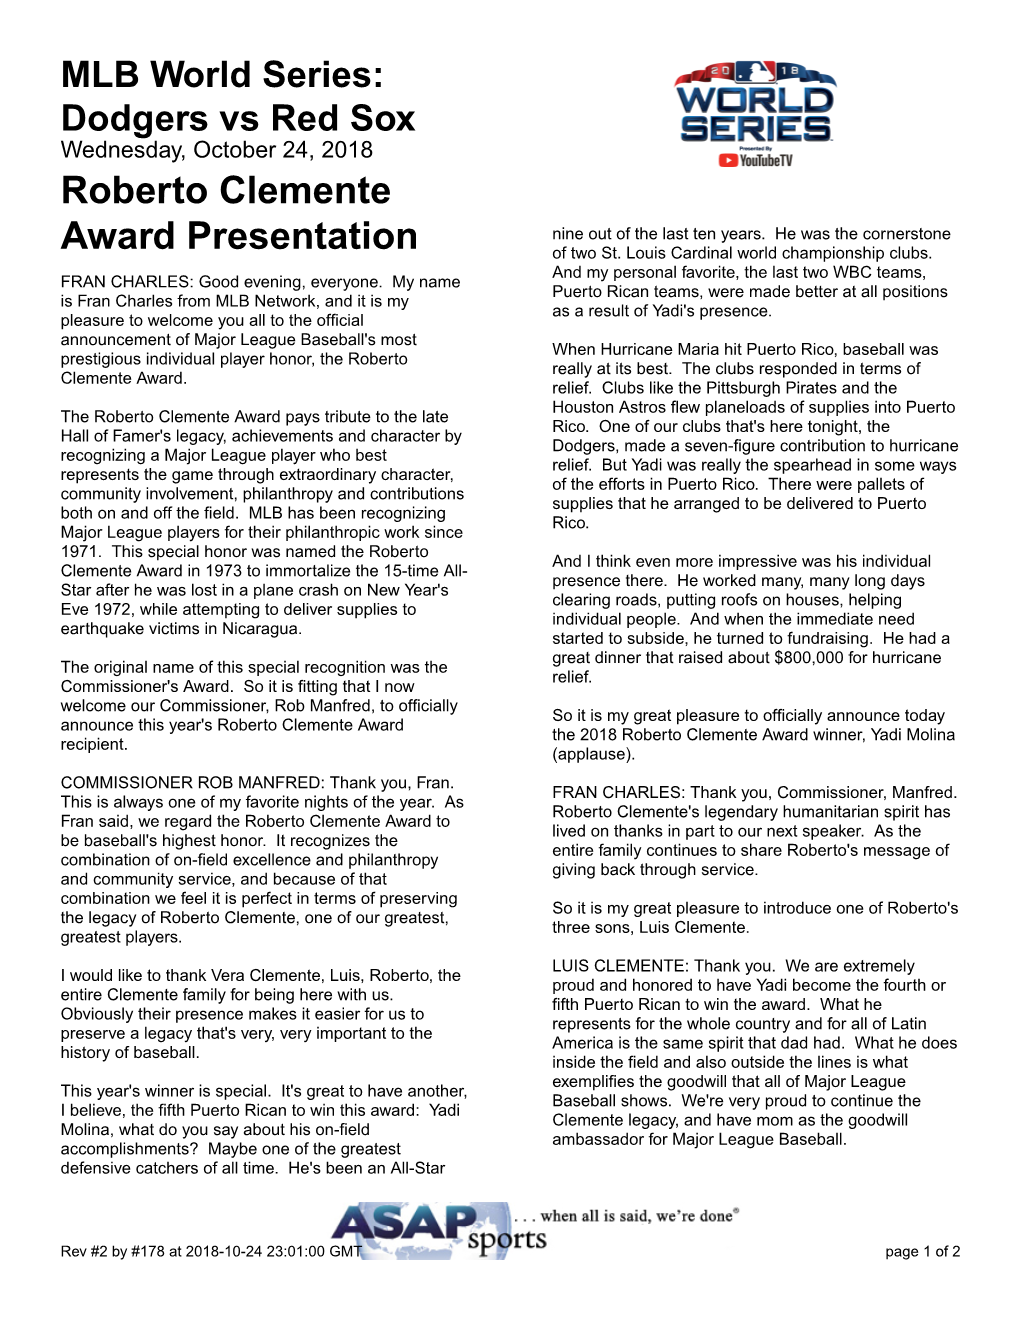 Roberto Clemente Award Presentation